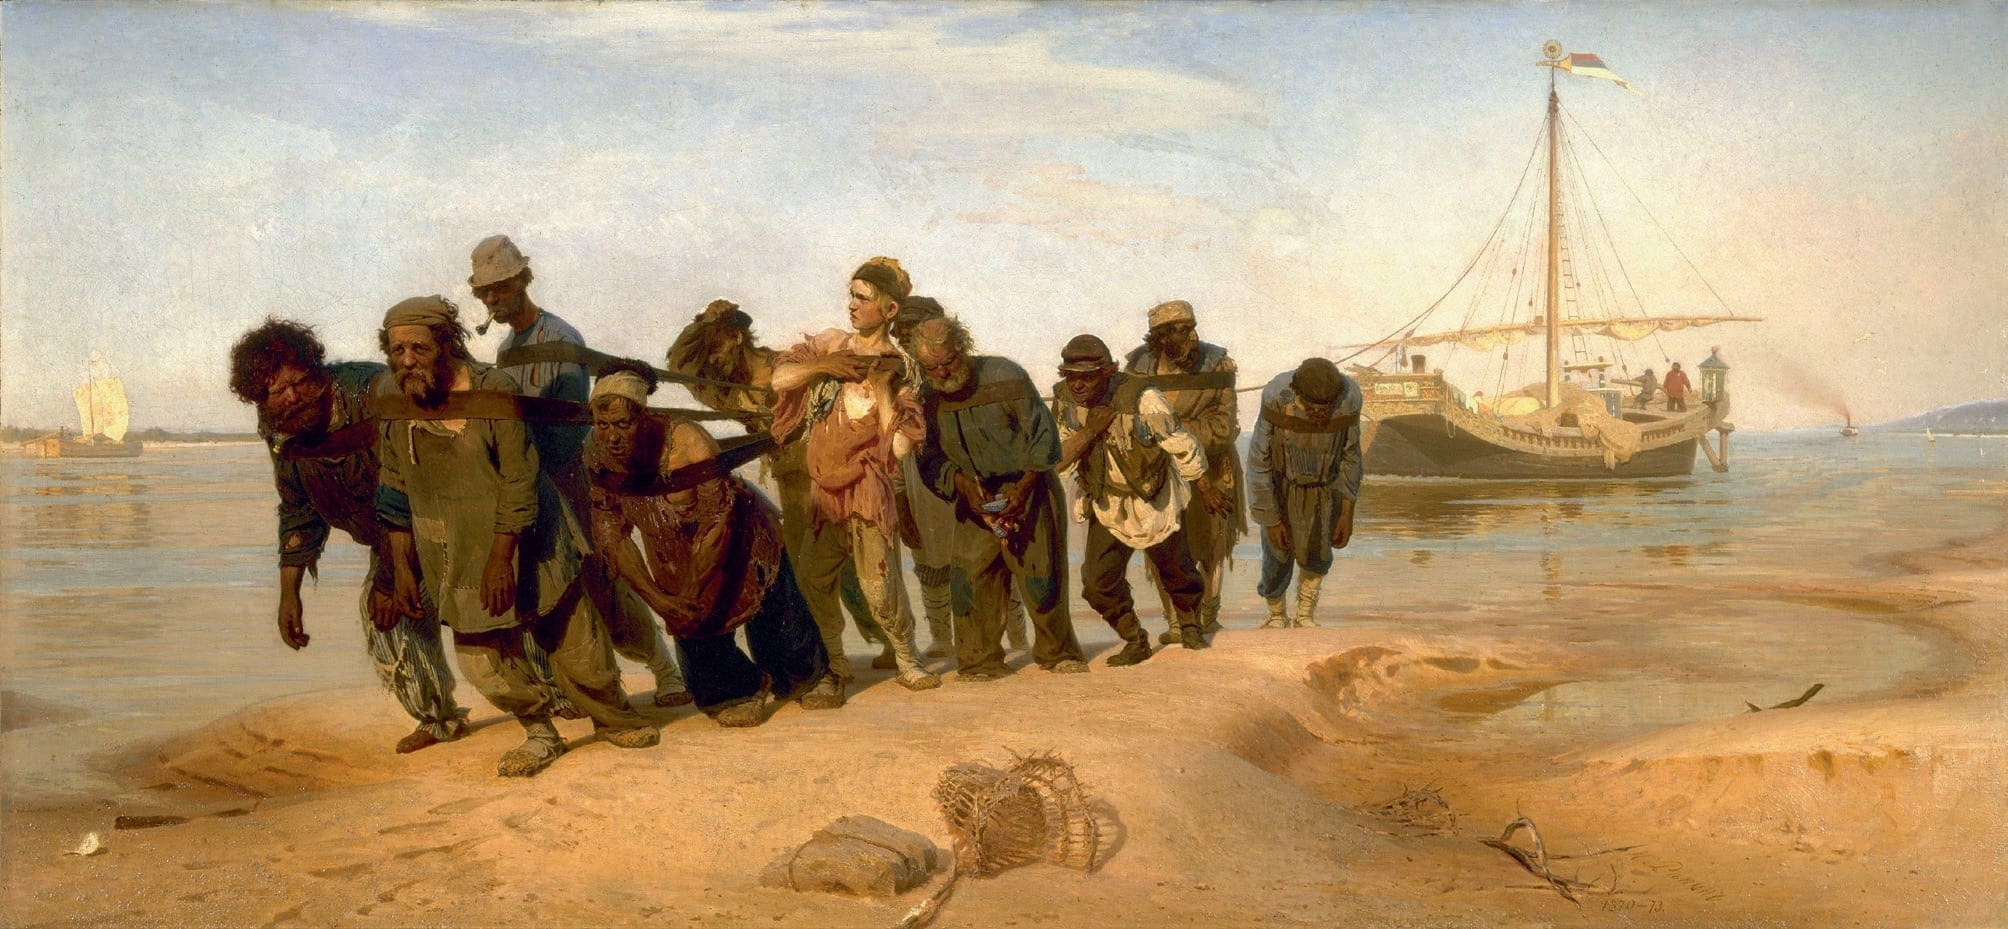 Ilia Efimovich Repin, Burlaks on the Volga, 1872–1873